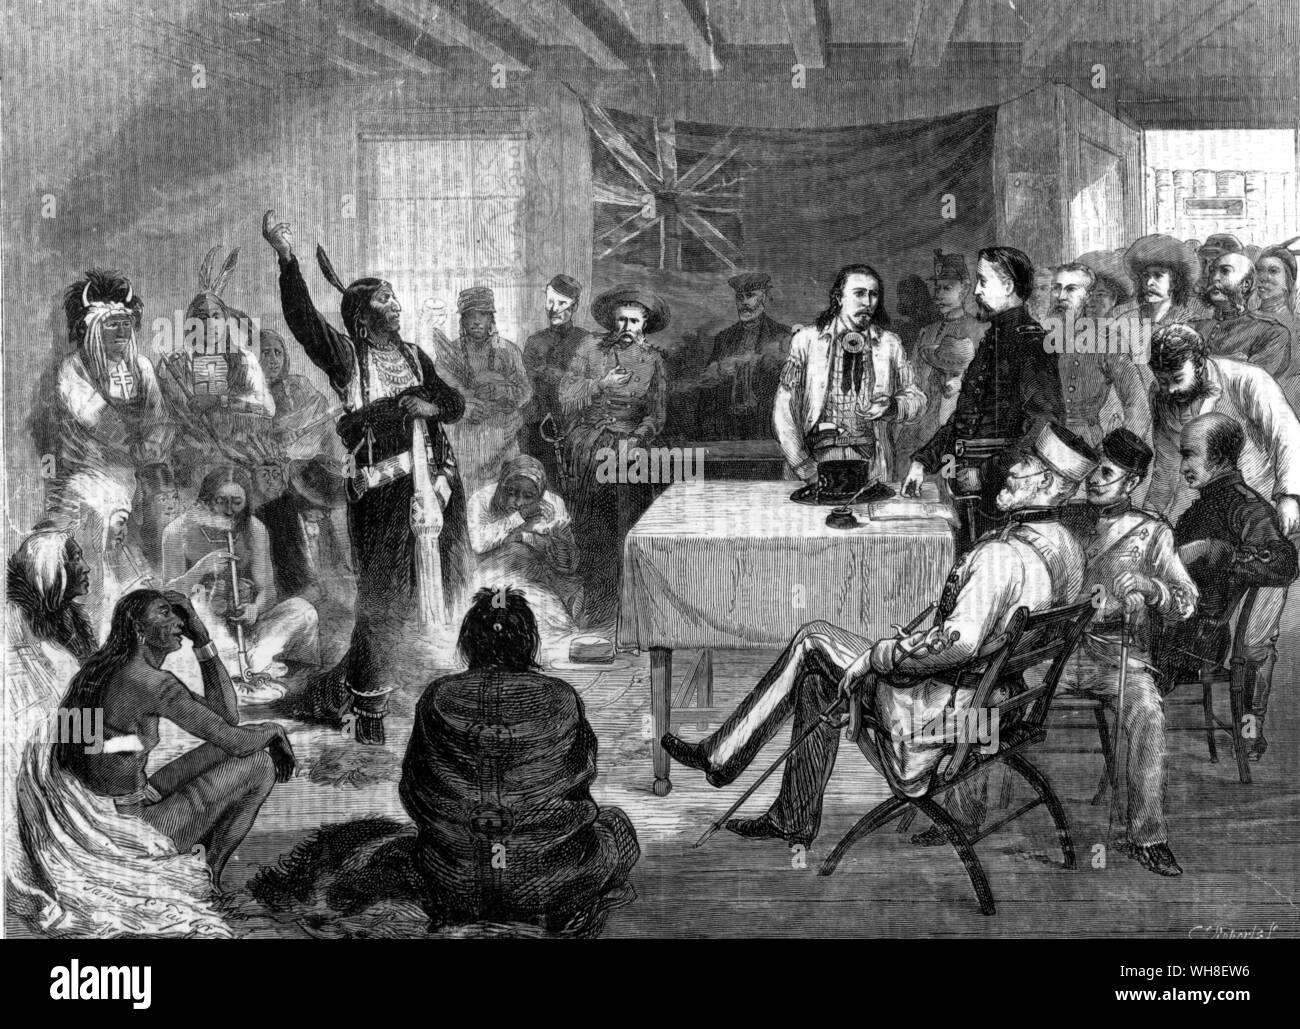 Toro Sentado el Consejo en octubre de 1877. Toro Sentado a la Comisión remonstrating en Fort Walsh del territorio británico. . Foto de stock